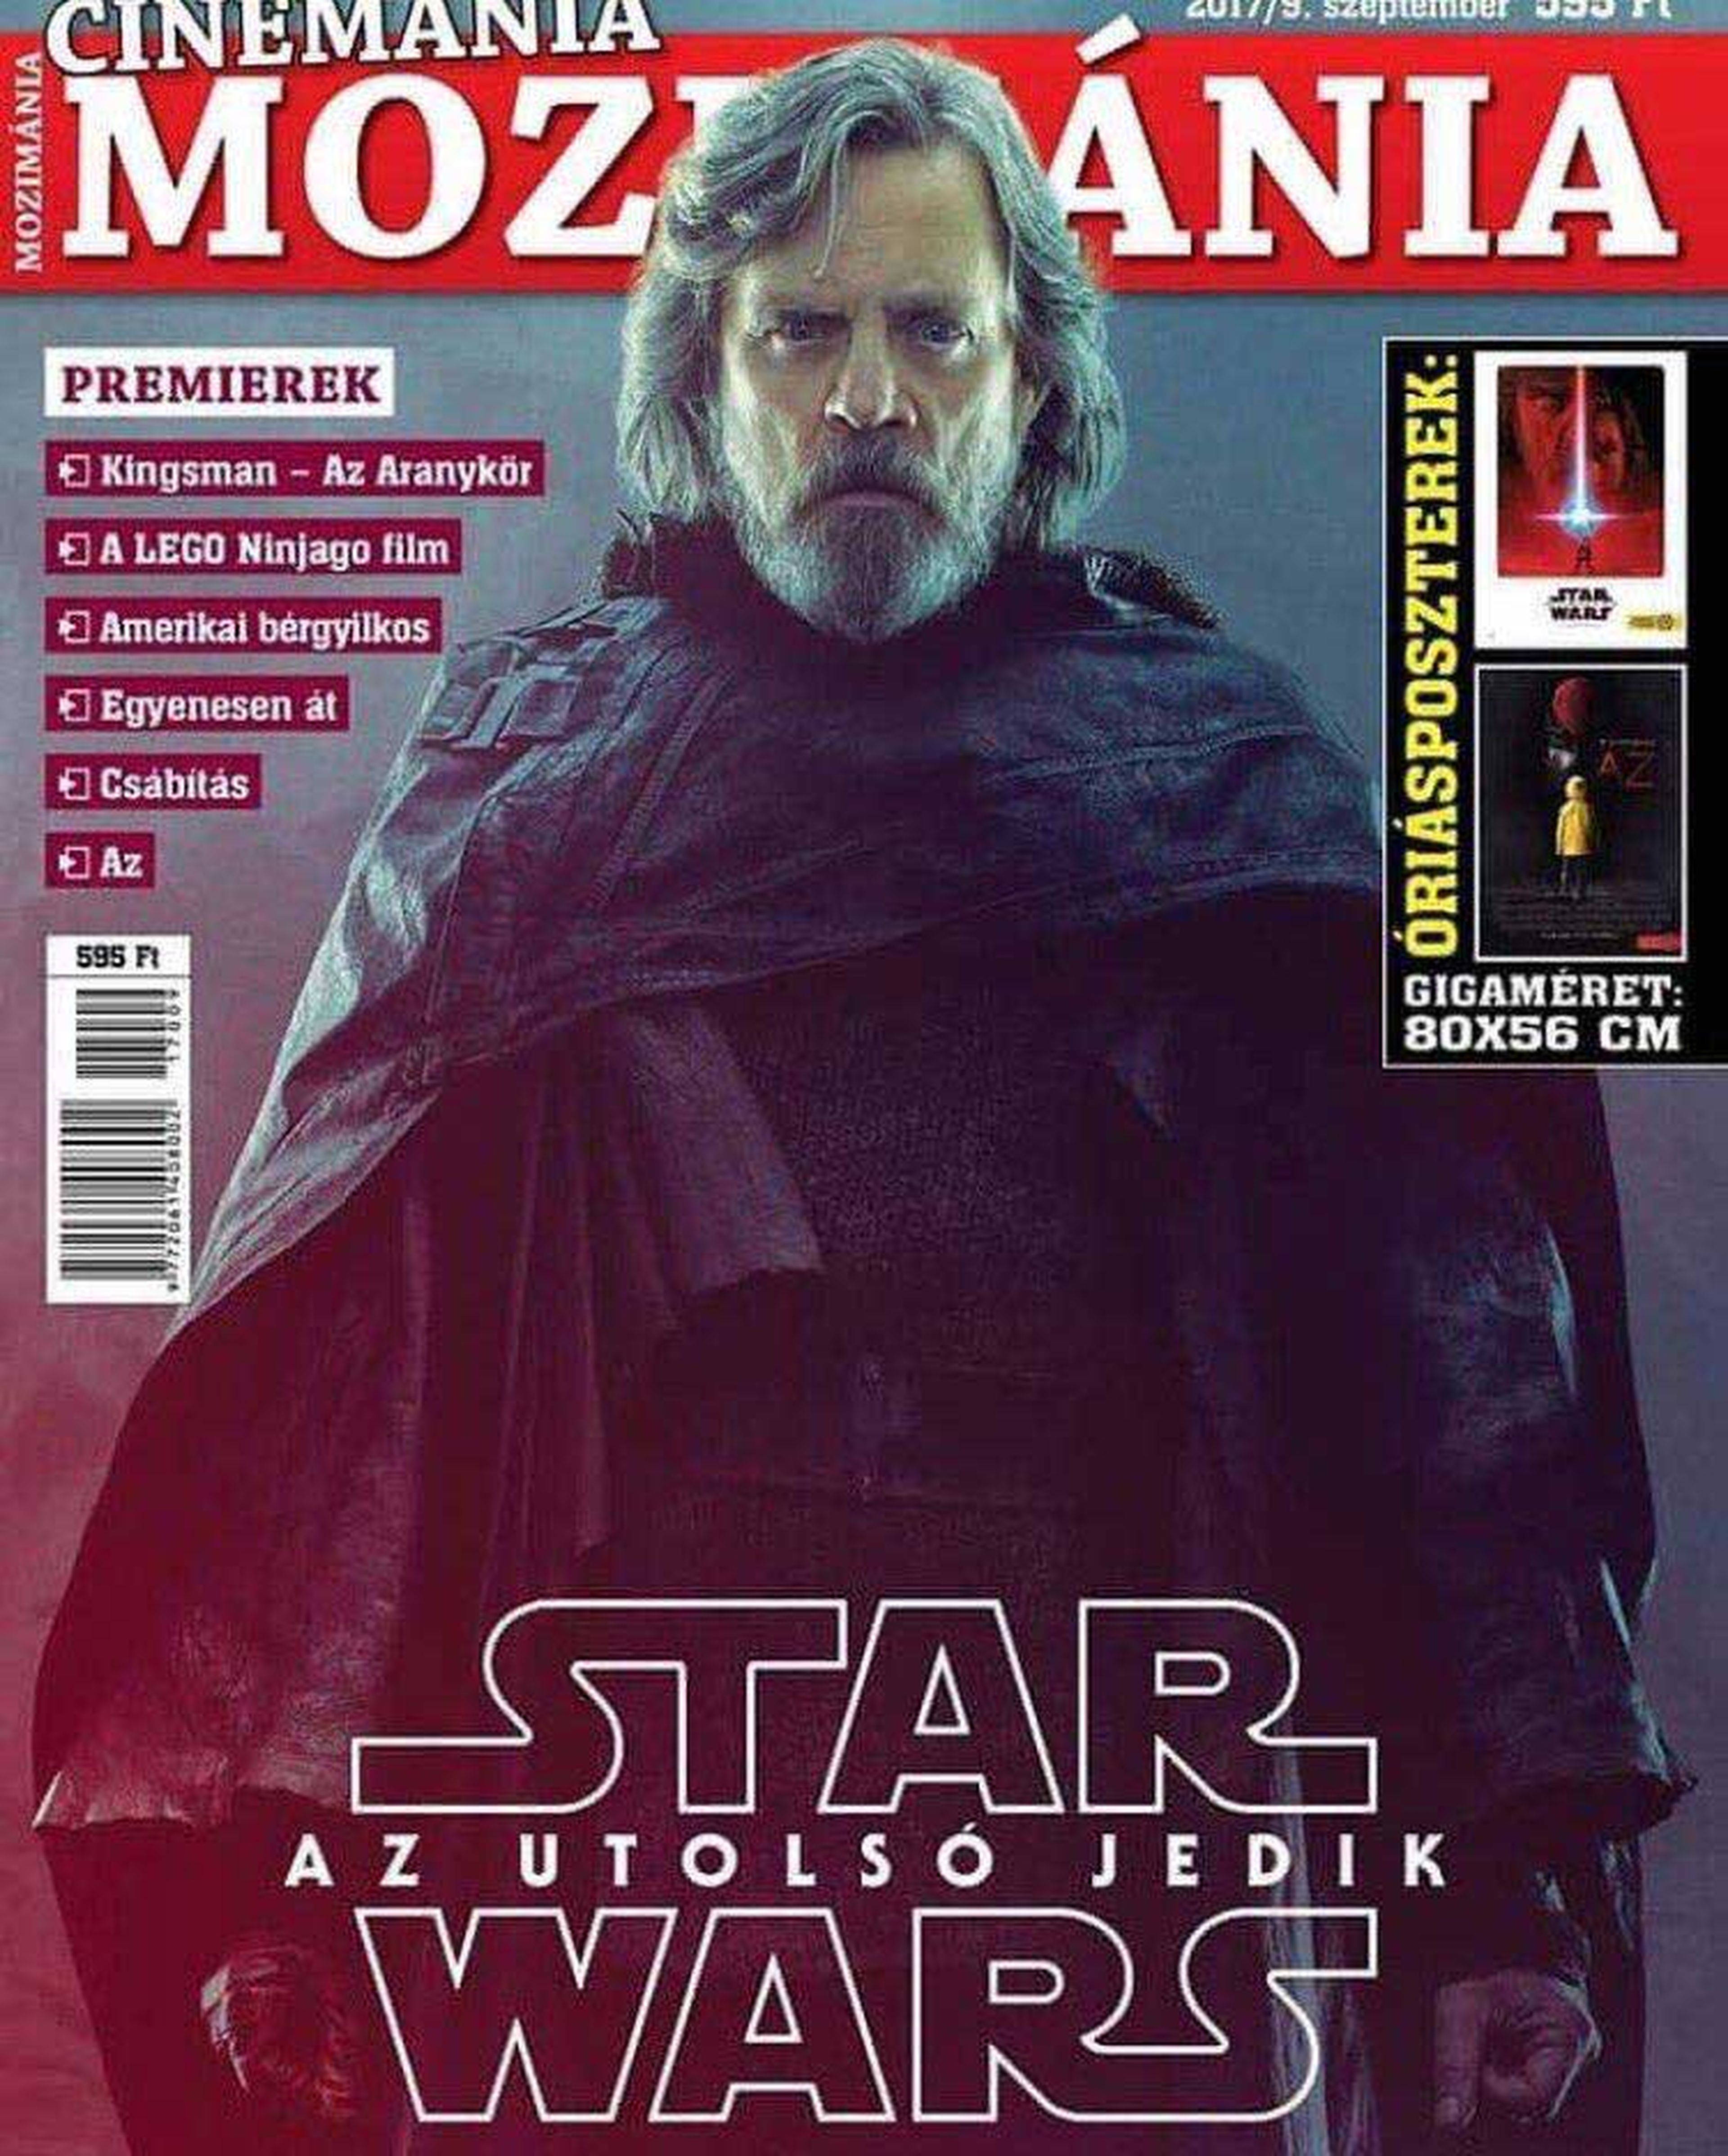 Portada Star Wars: Los últimos Jedi - Luke Skywalker